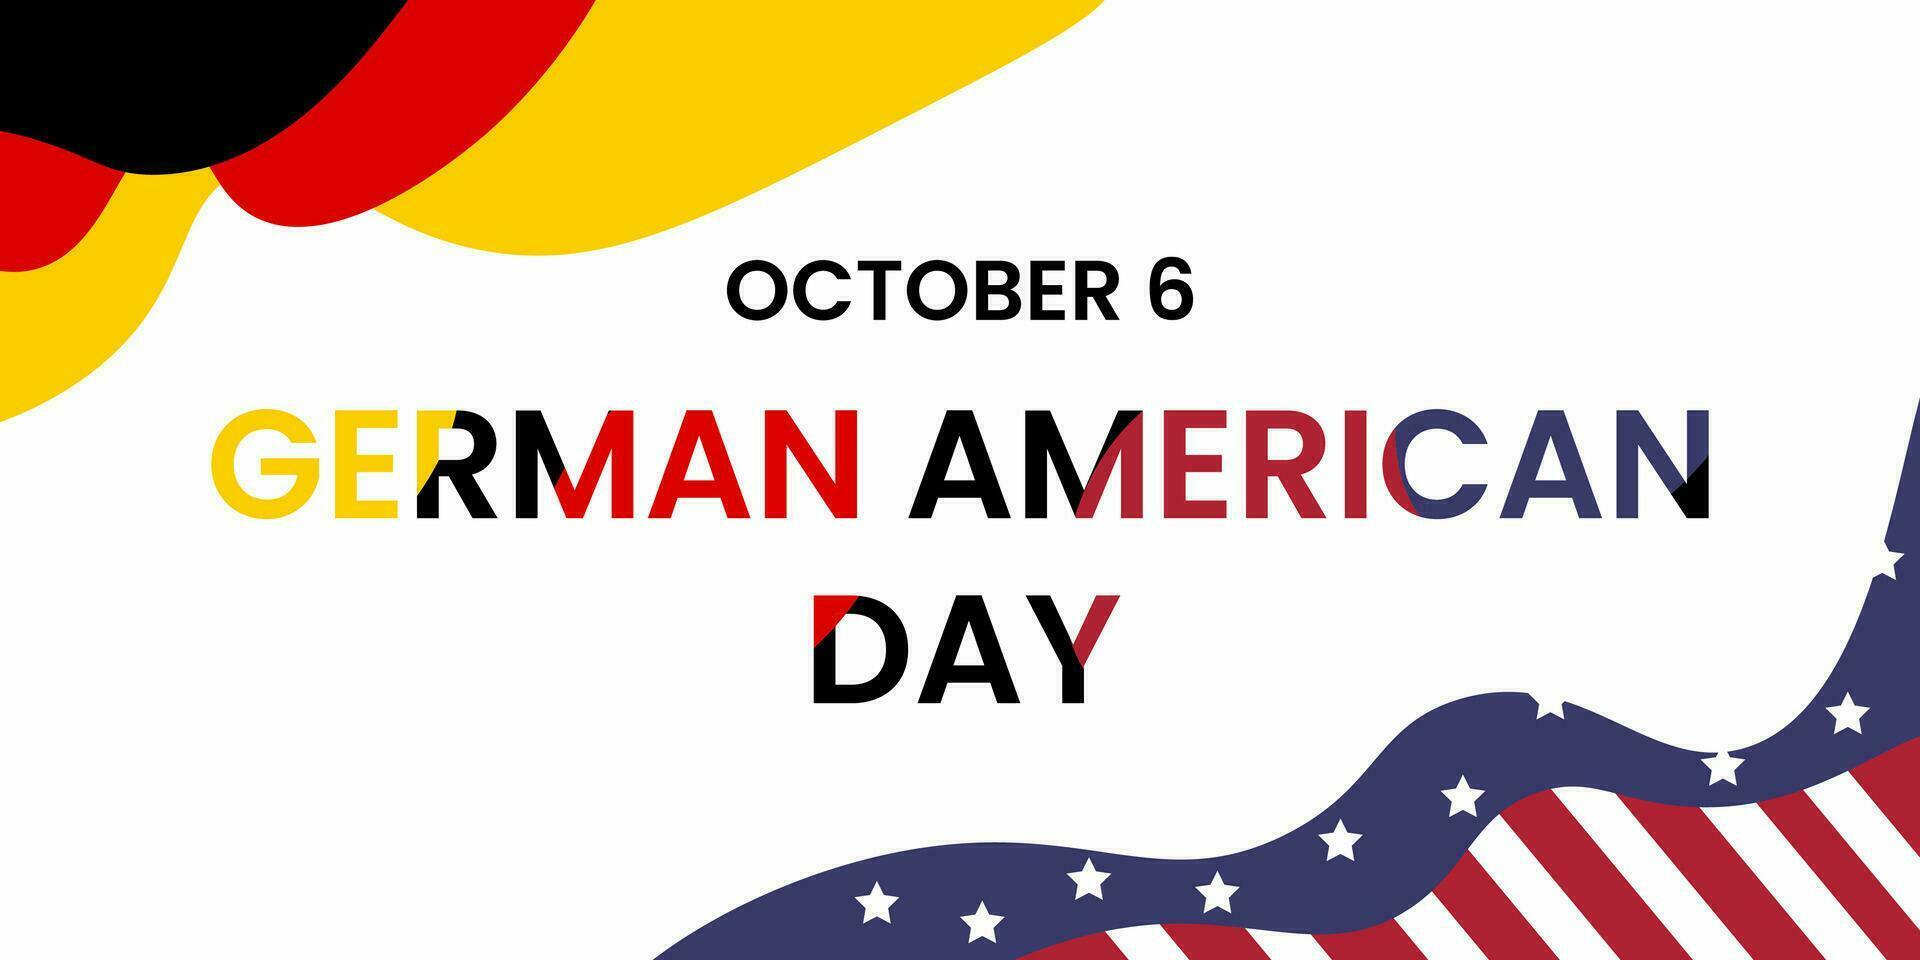 Deutsche amerikanisch Tag auf Oktober 6. das vereinigt Zustände Urlaub mit USA und Deutsche Flagge. geeignet für. Sozial Medien Beiträge, Poster, Banner usw. vektor